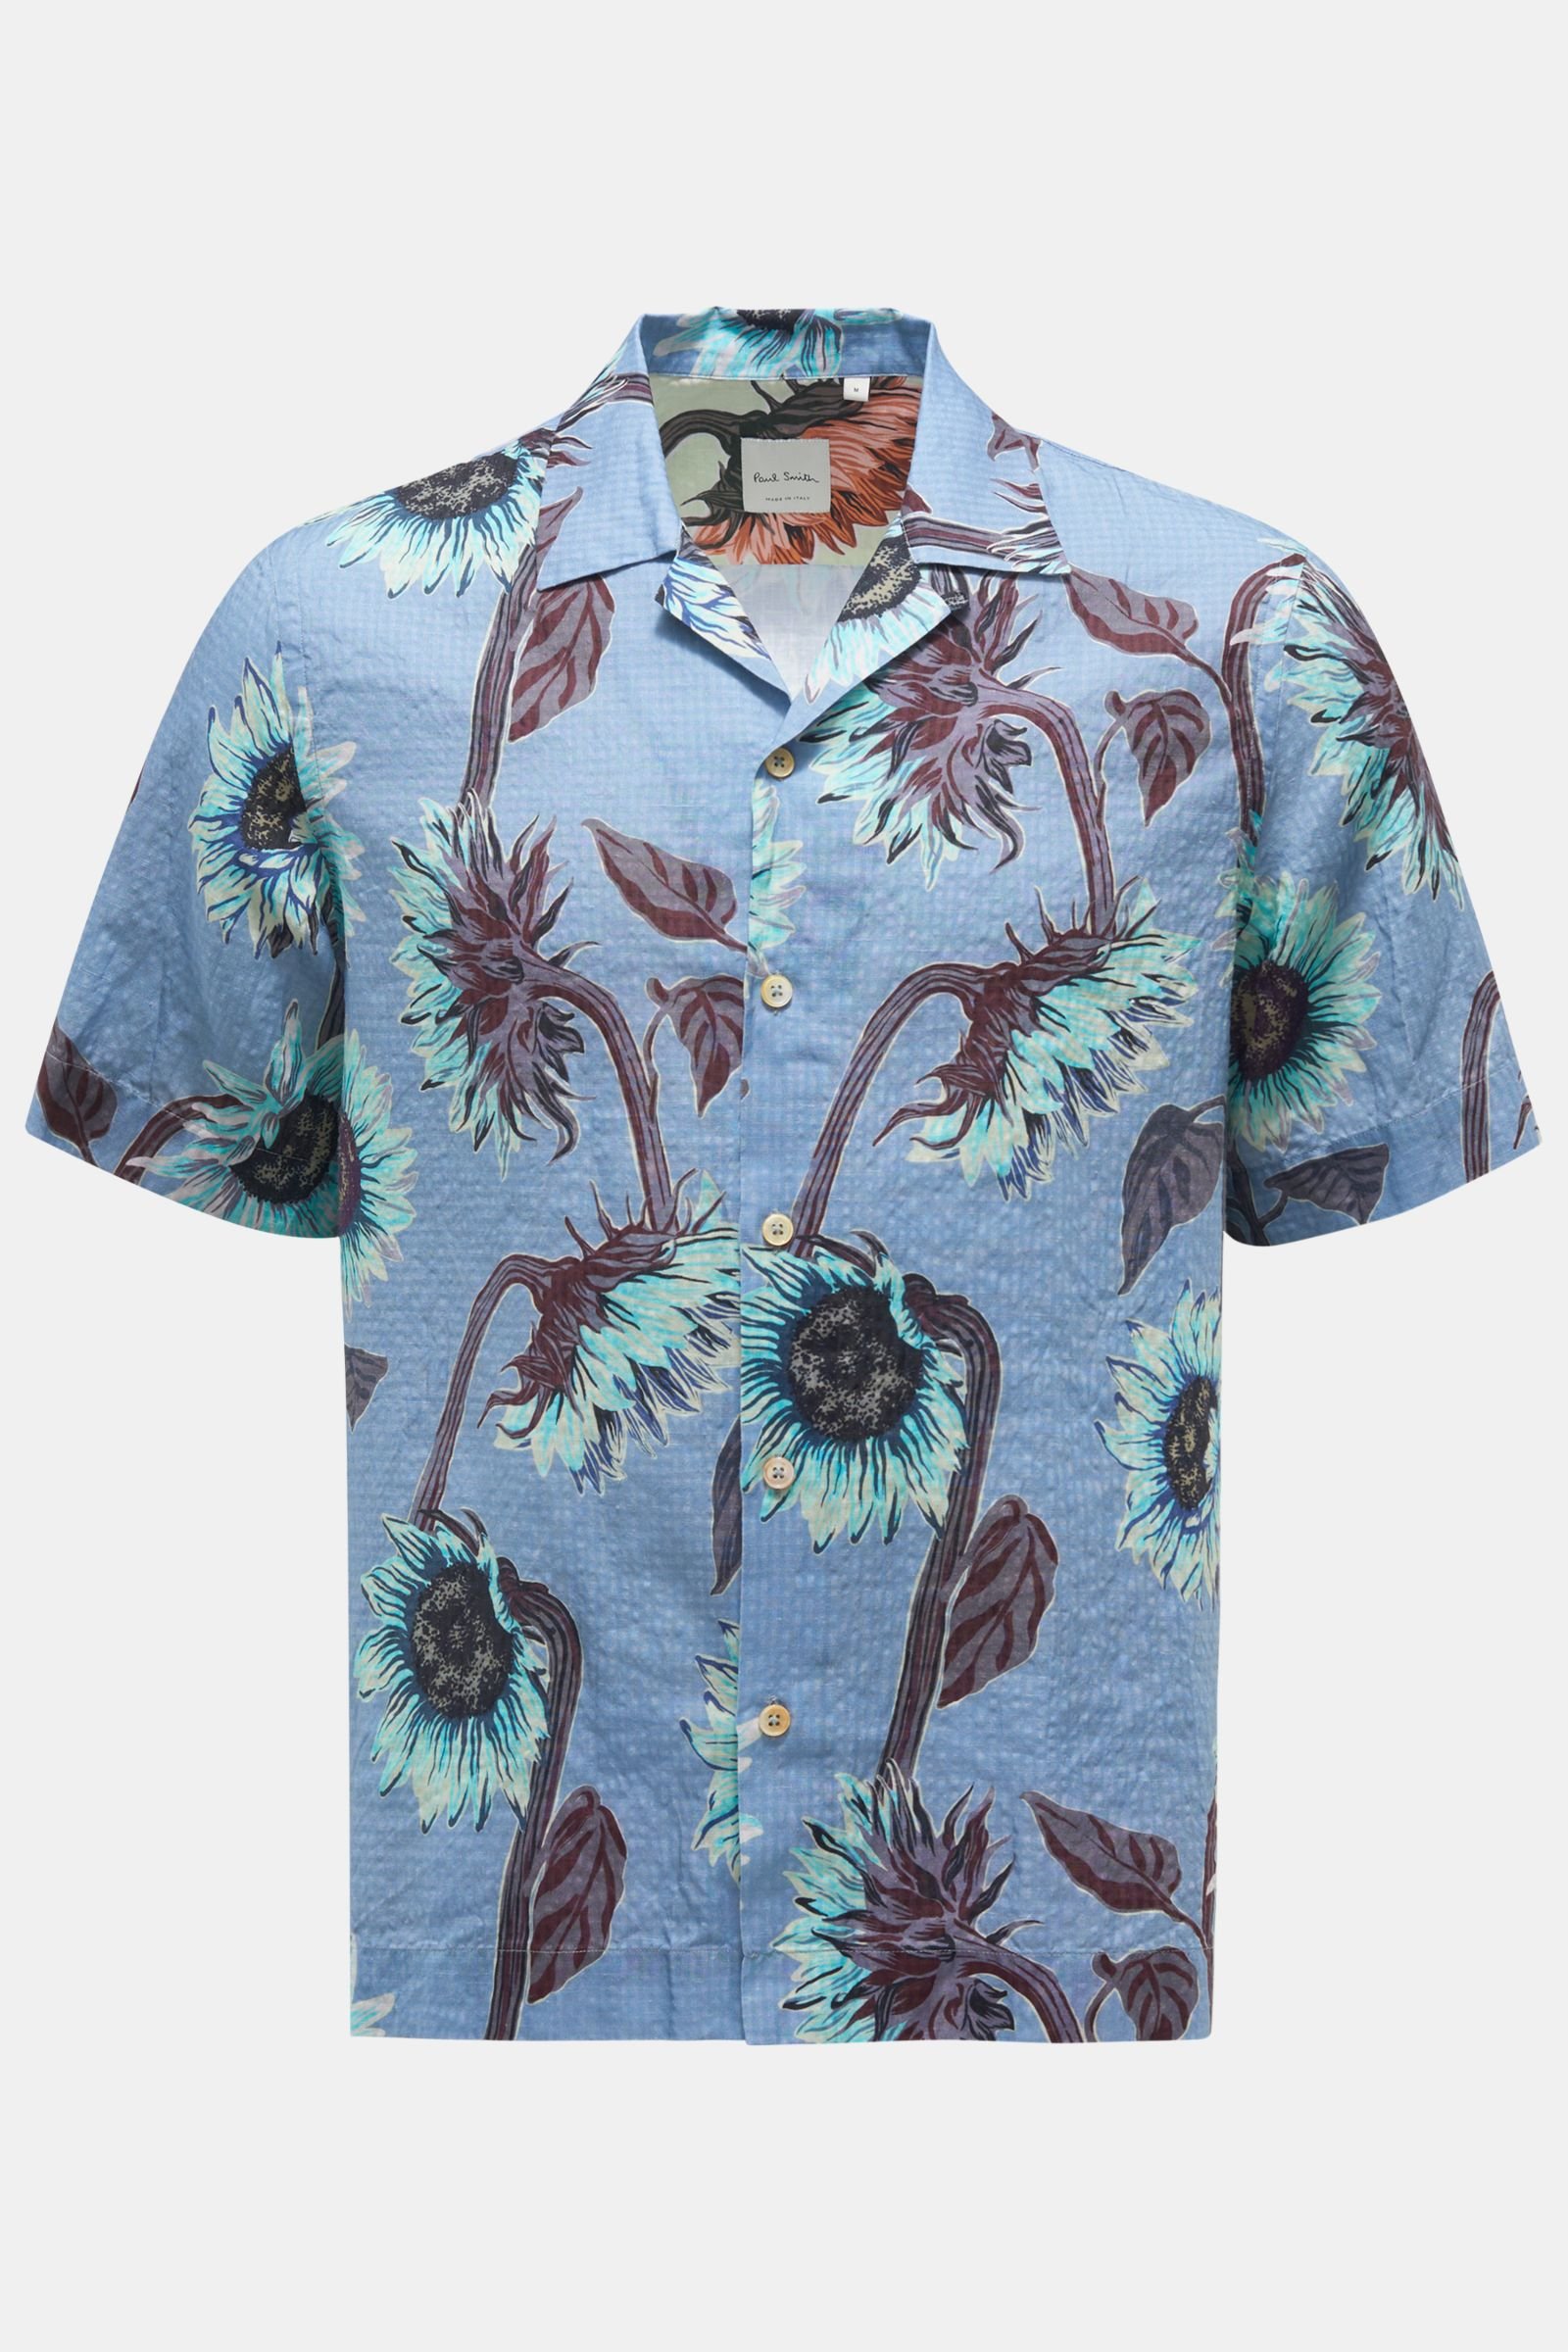 Seersucker short sleeve shirt Cuban collar smoky blue patterned